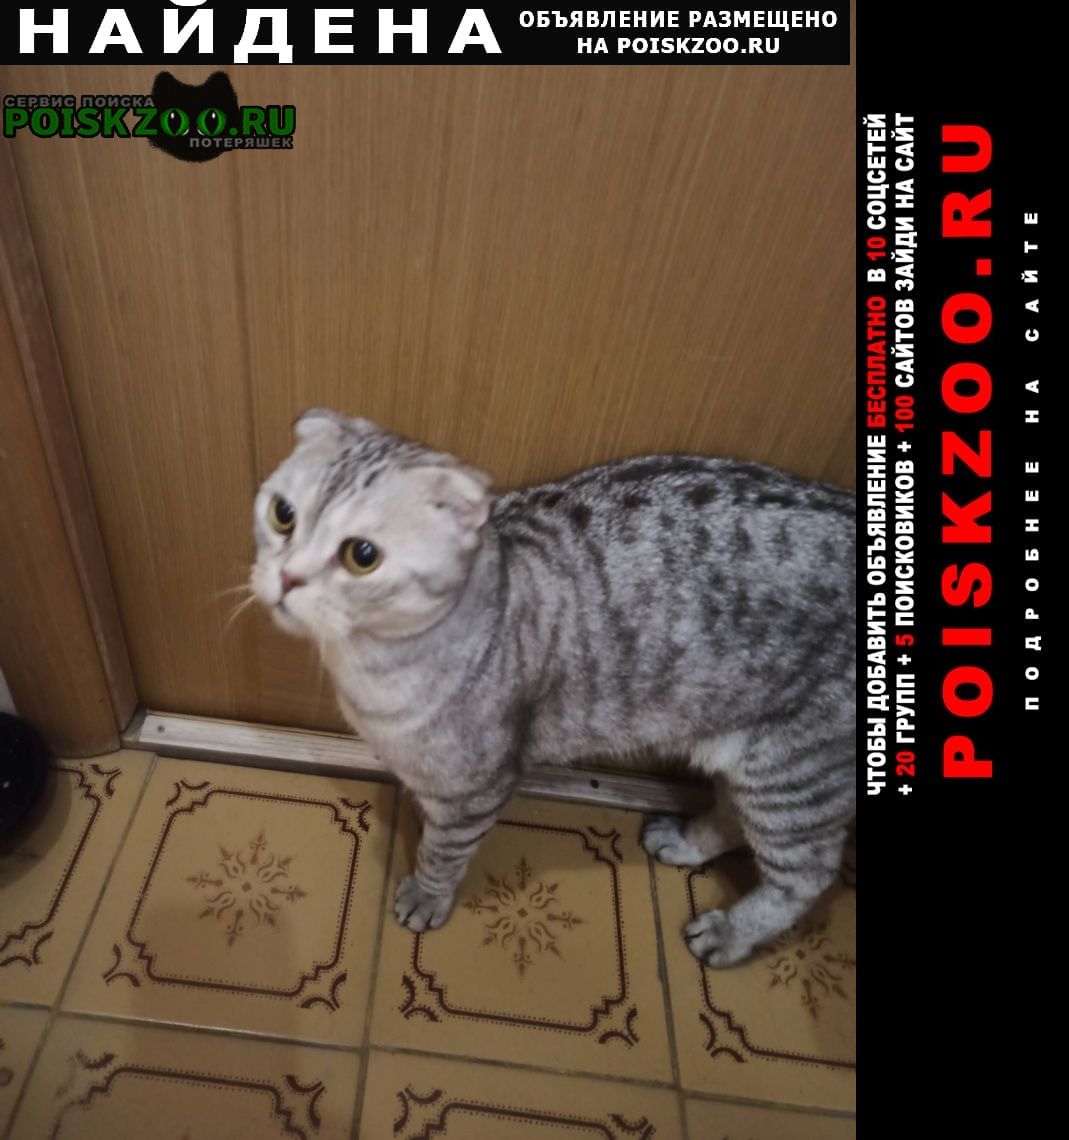 Найден кот в московском районе Нижний Новгород